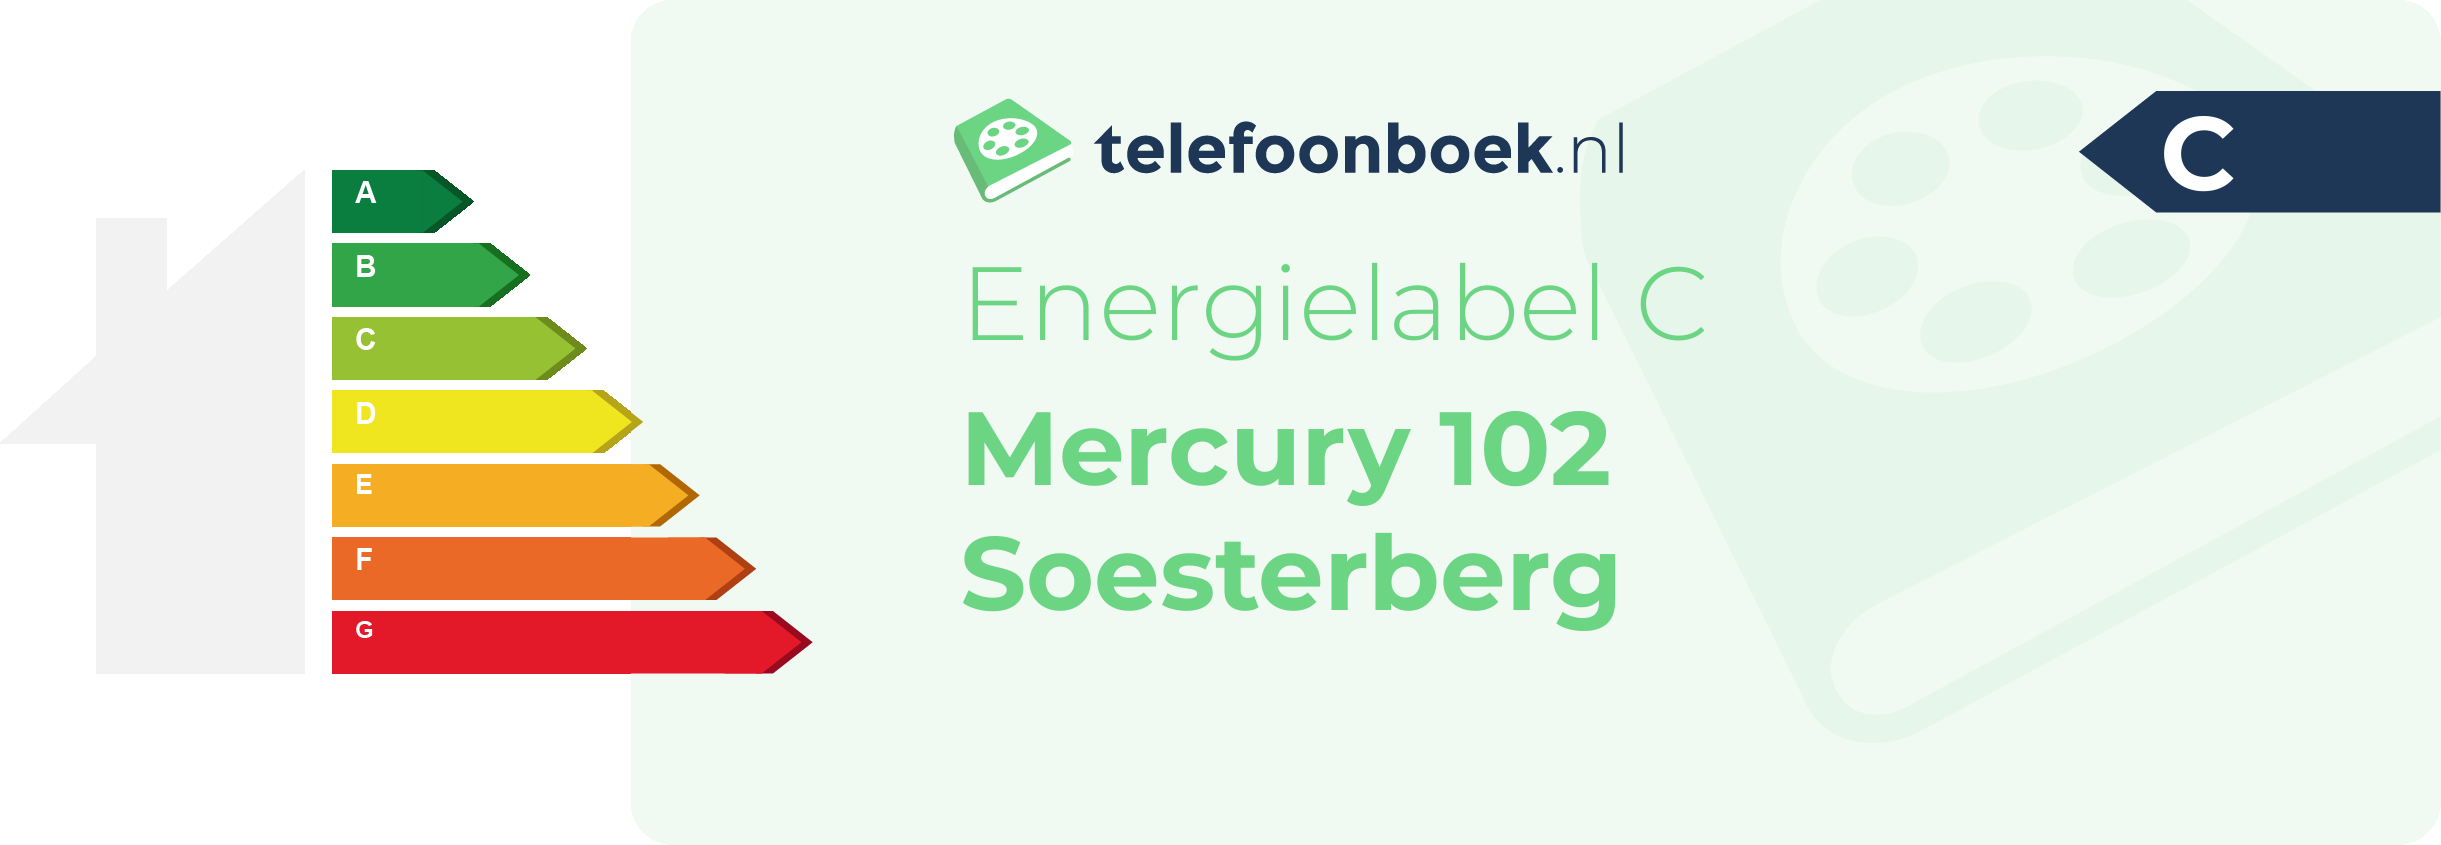 Energielabel Mercury 102 Soesterberg